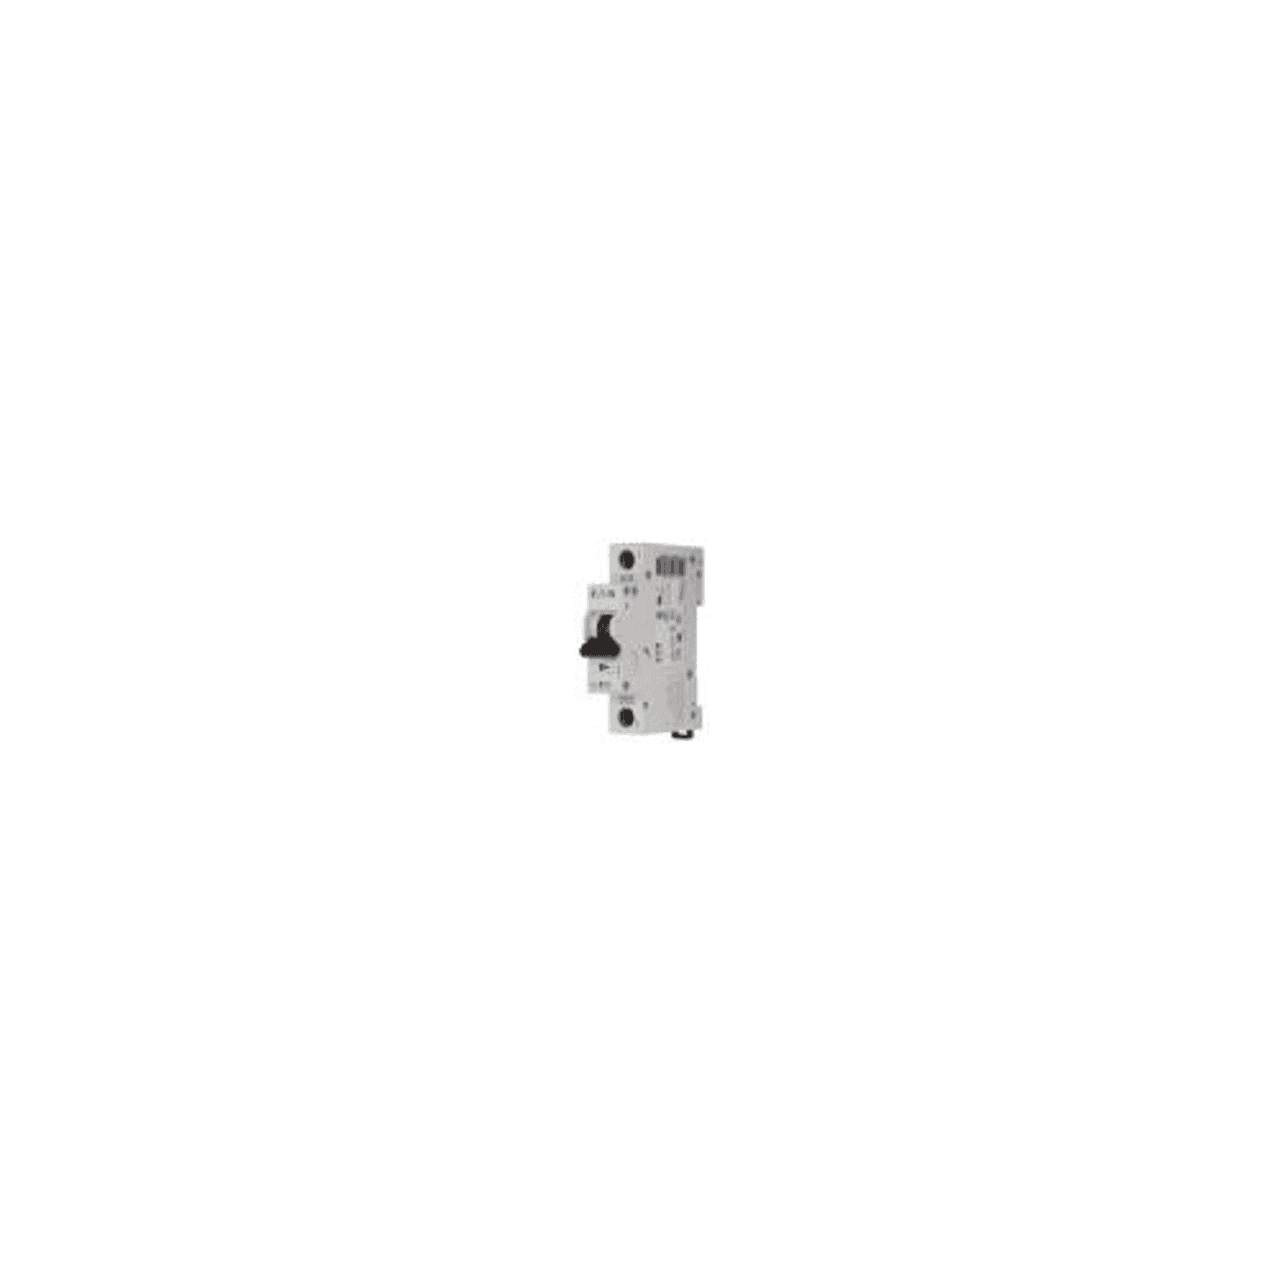 Eaton FAZ-C2/1-NA-L Miniature circuir breaker, 1 pole, 2 A, C trip curve, 240 VAC, screw terminals, UL489